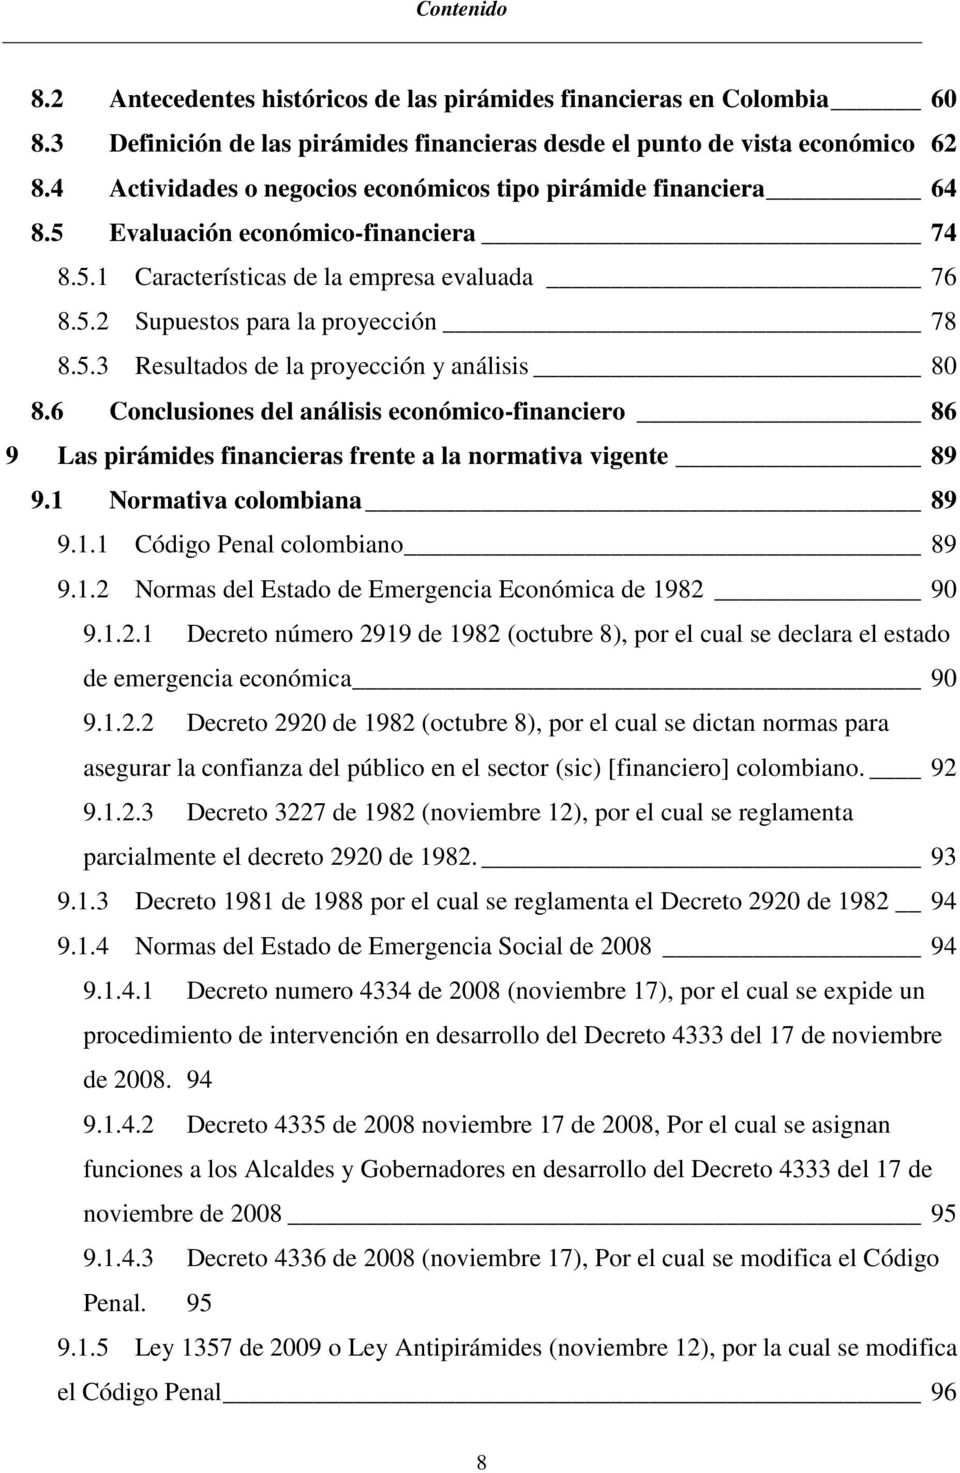 6 Conclusiones del análisis económico-financiero 86 9 Las pirámides financieras frente a la normativa vigente 89 9.1 Normativa colombiana 89 9.1.1 Código Penal colombiano 89 9.1.2 Normas del Estado de Emergencia Económica de 1982 90 9.